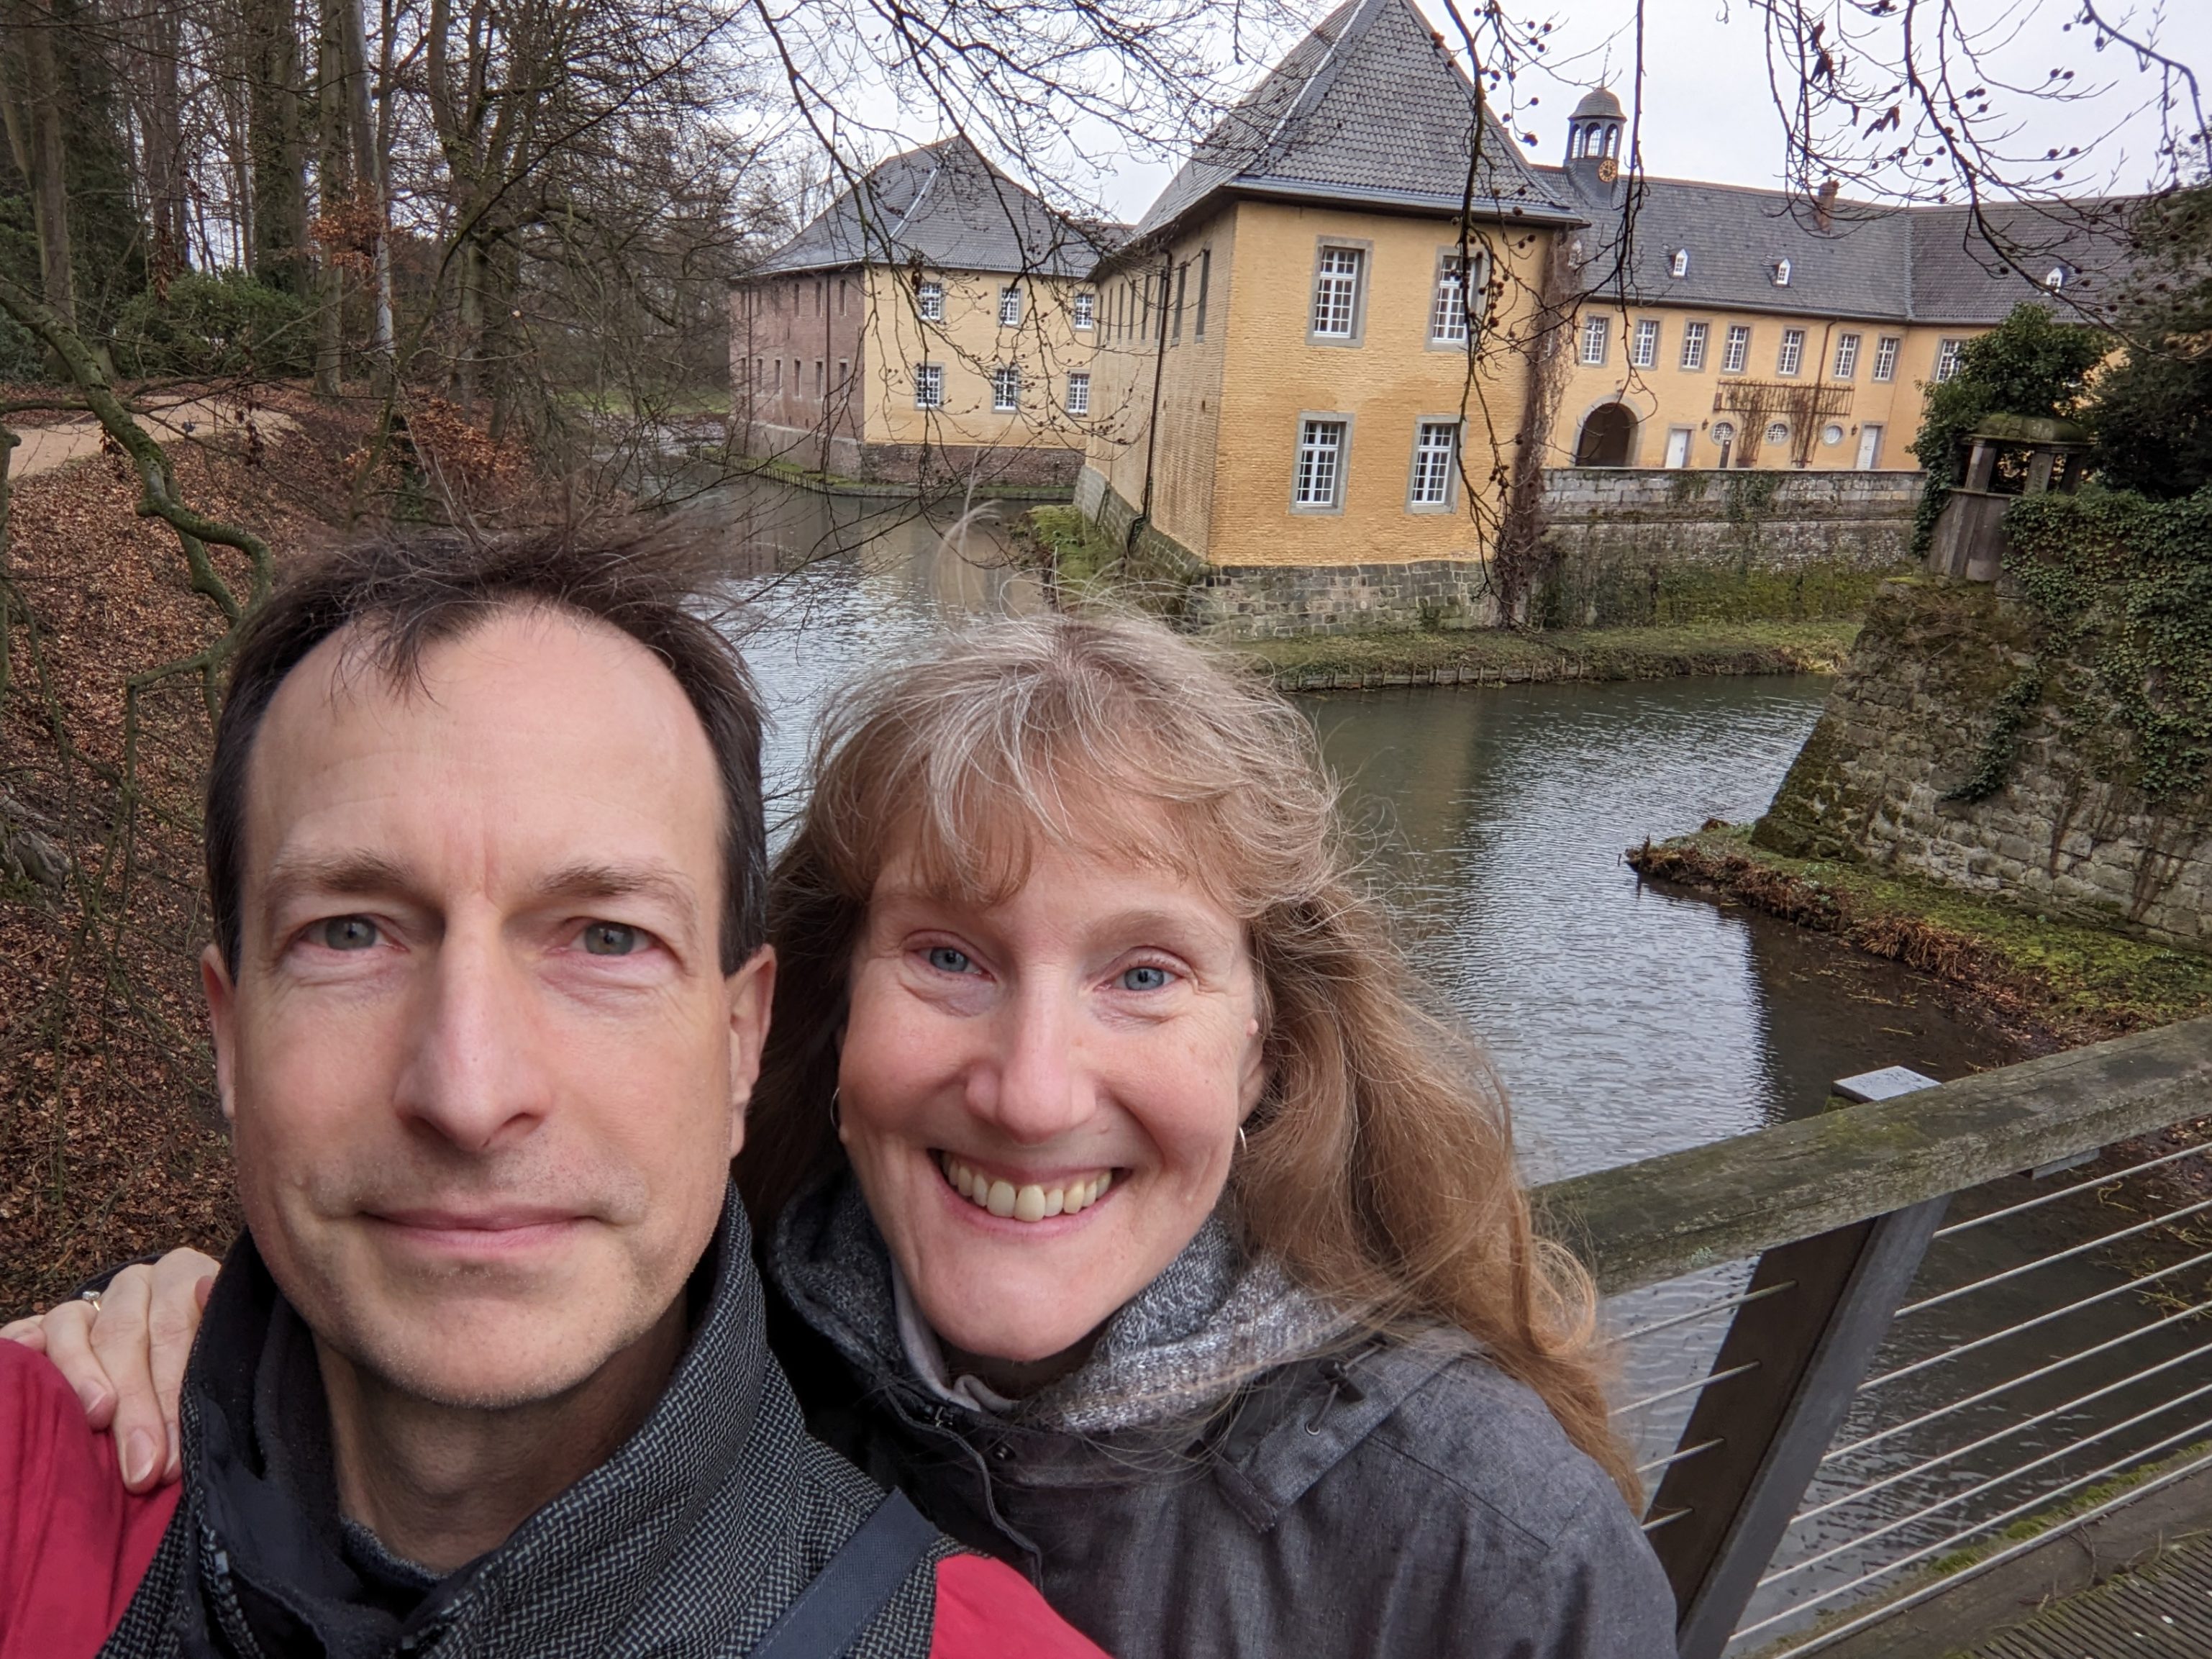 David and Katherine at Schloss Dyck